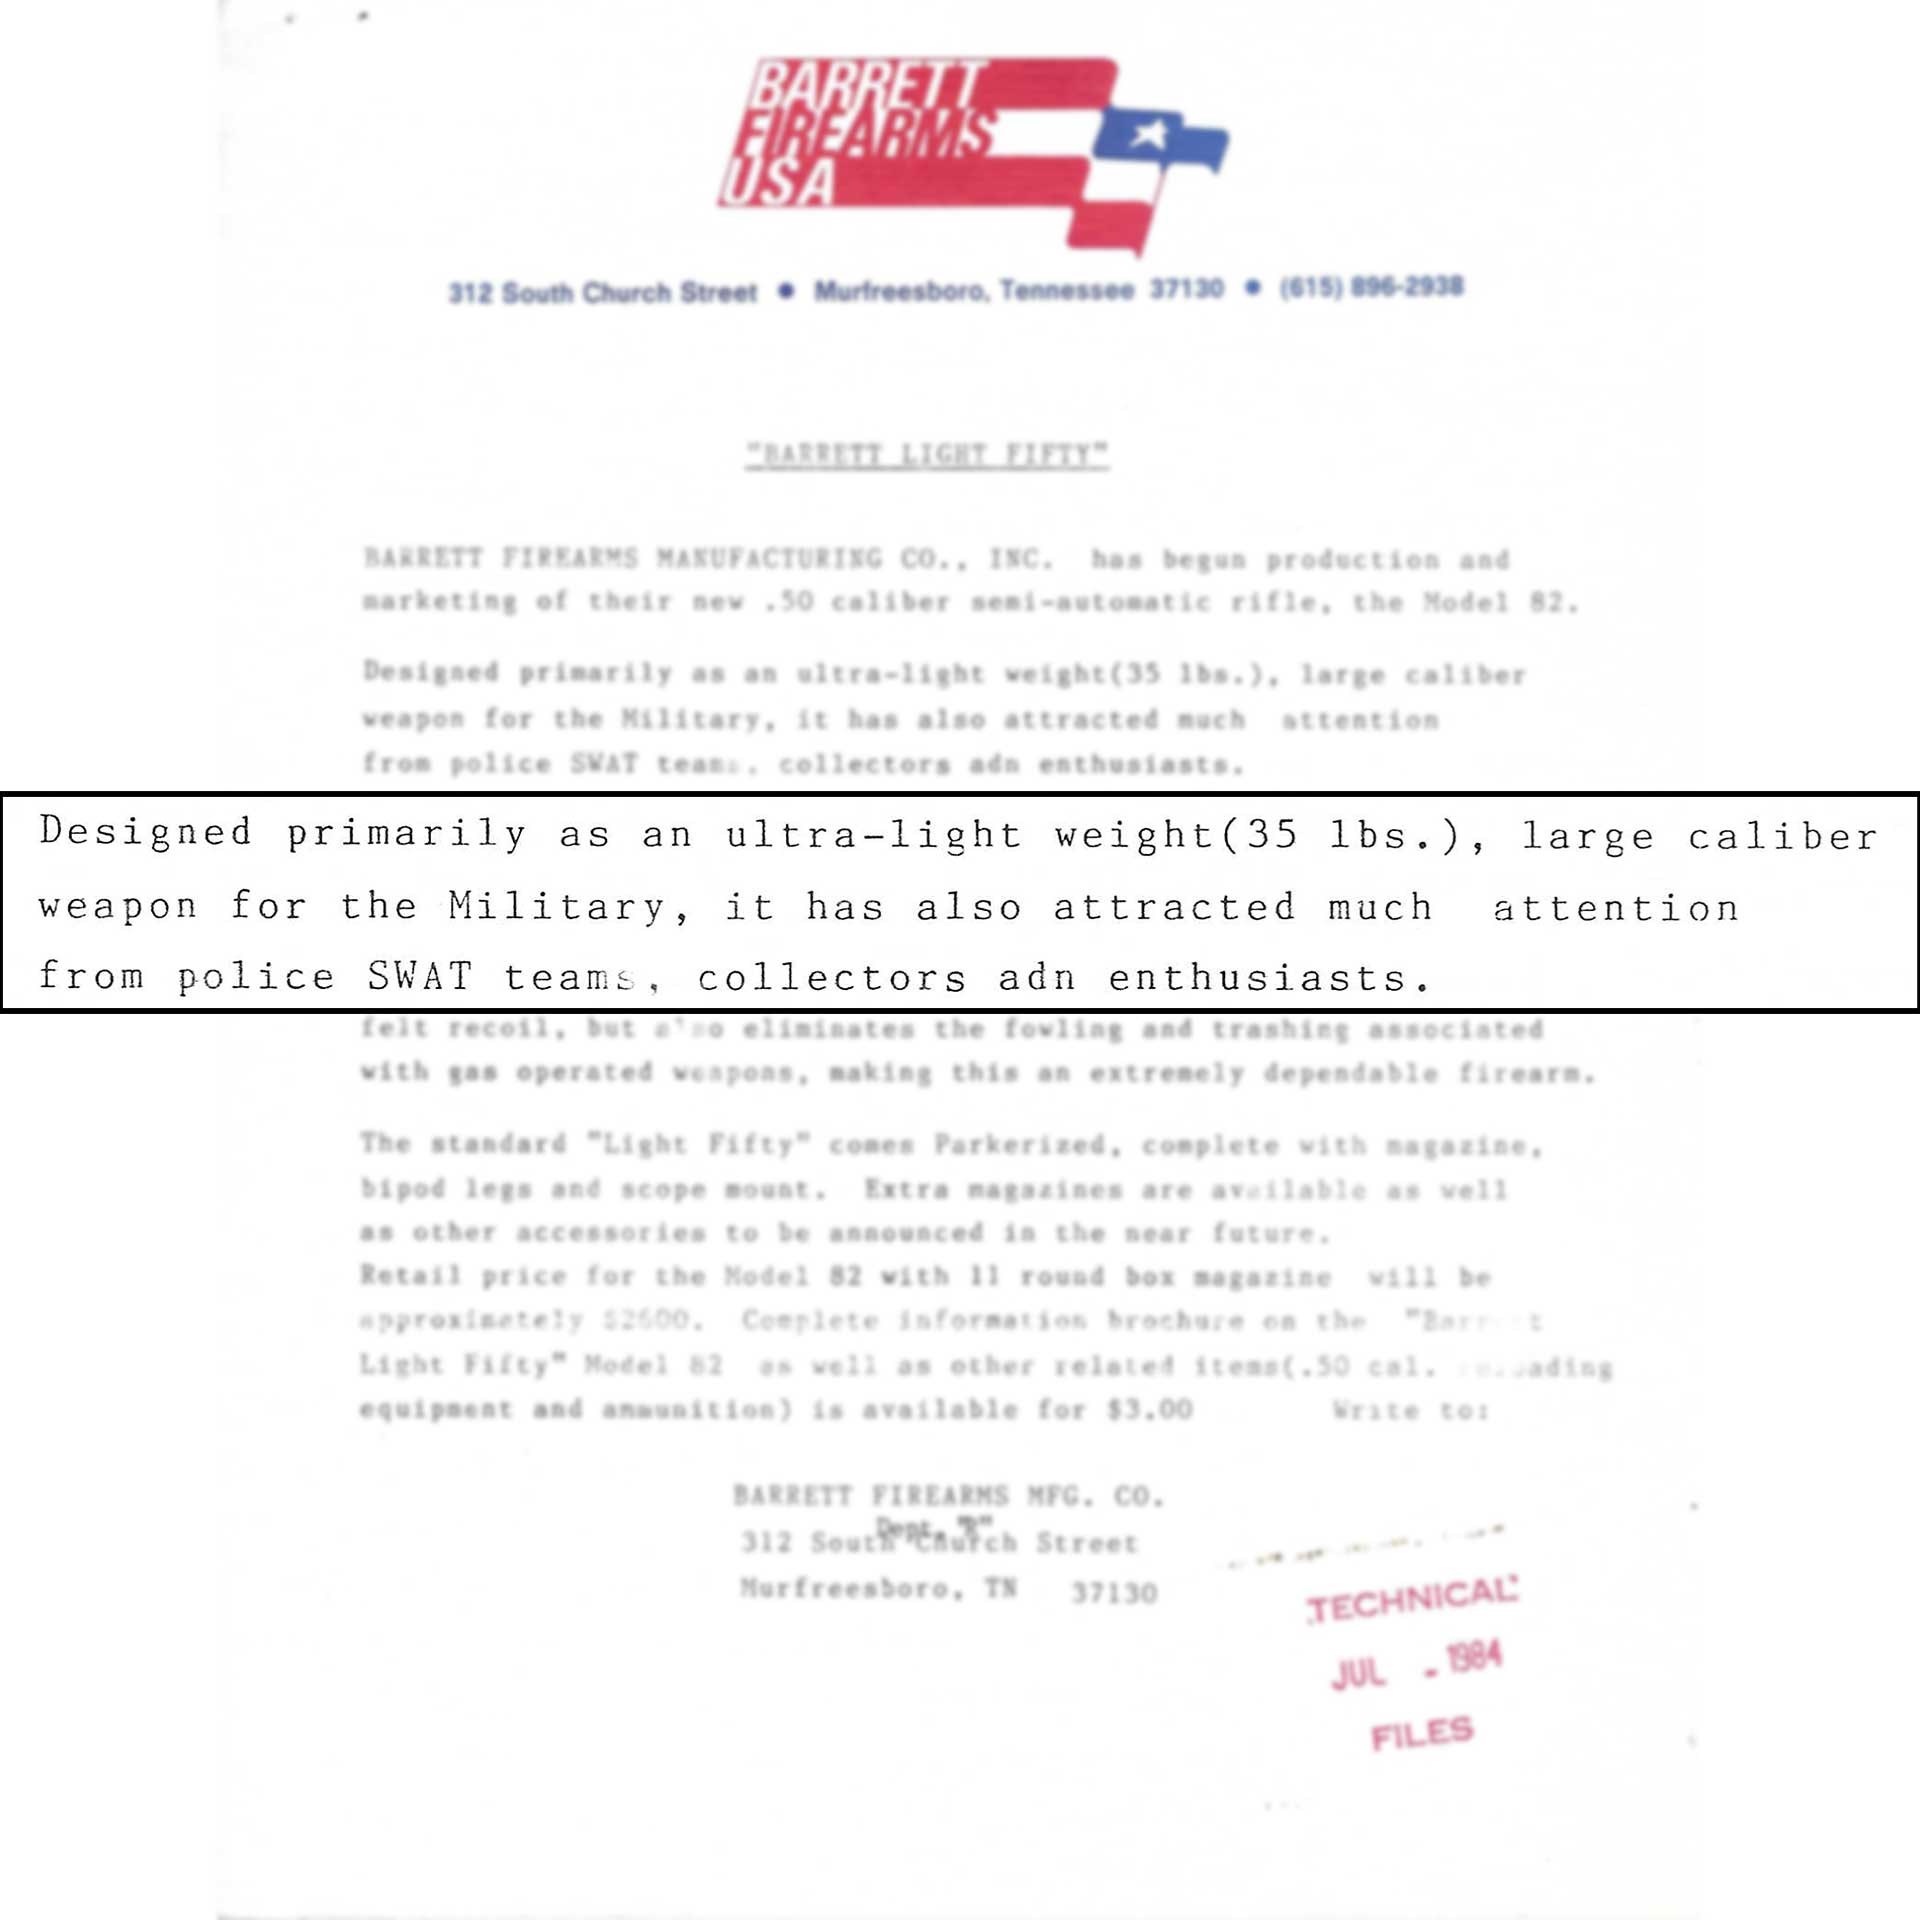 Barrett Firearms marketing document letter scan